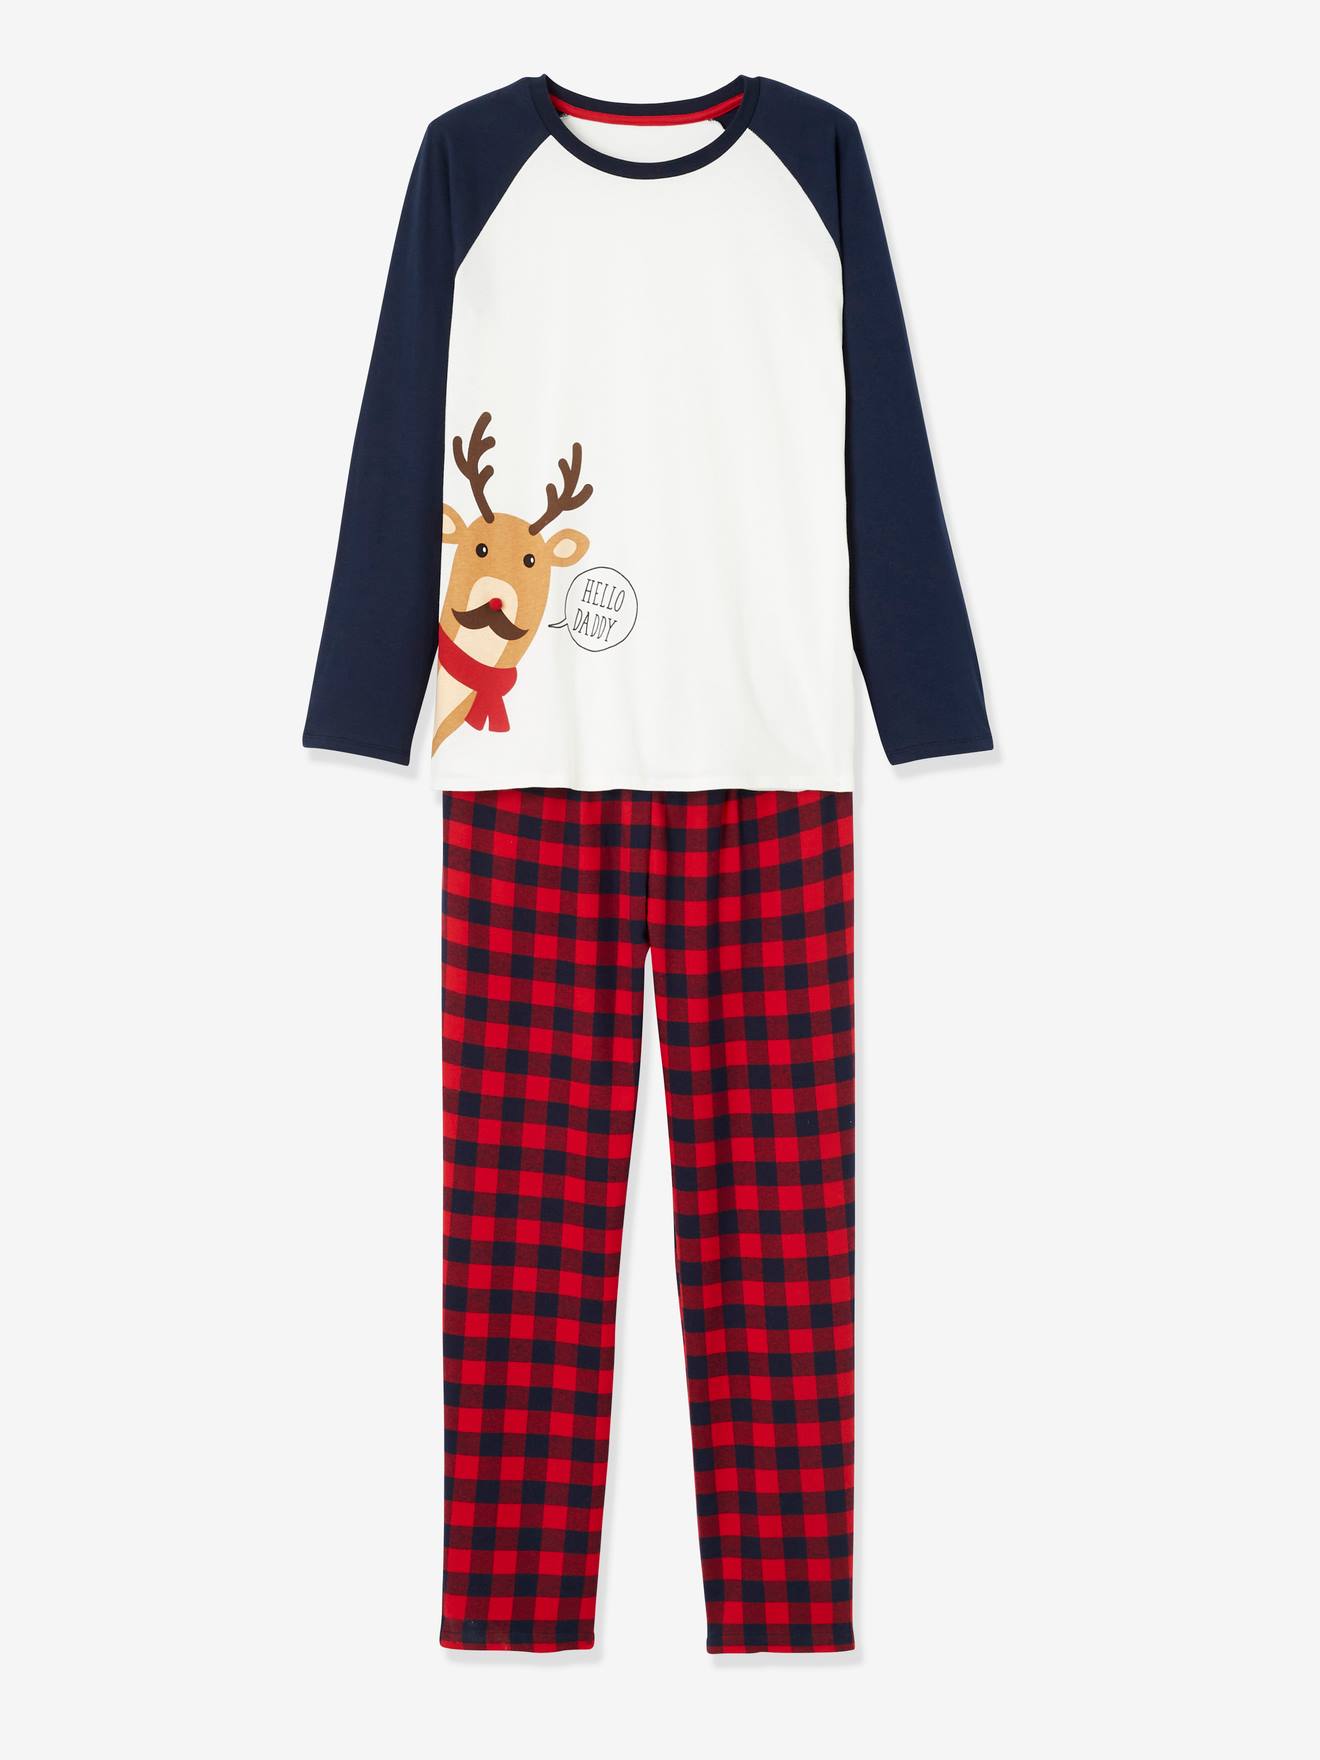 VERTBAUDET Pijama hombre especial Navidad cápsula Familia beige claro liso con motivos